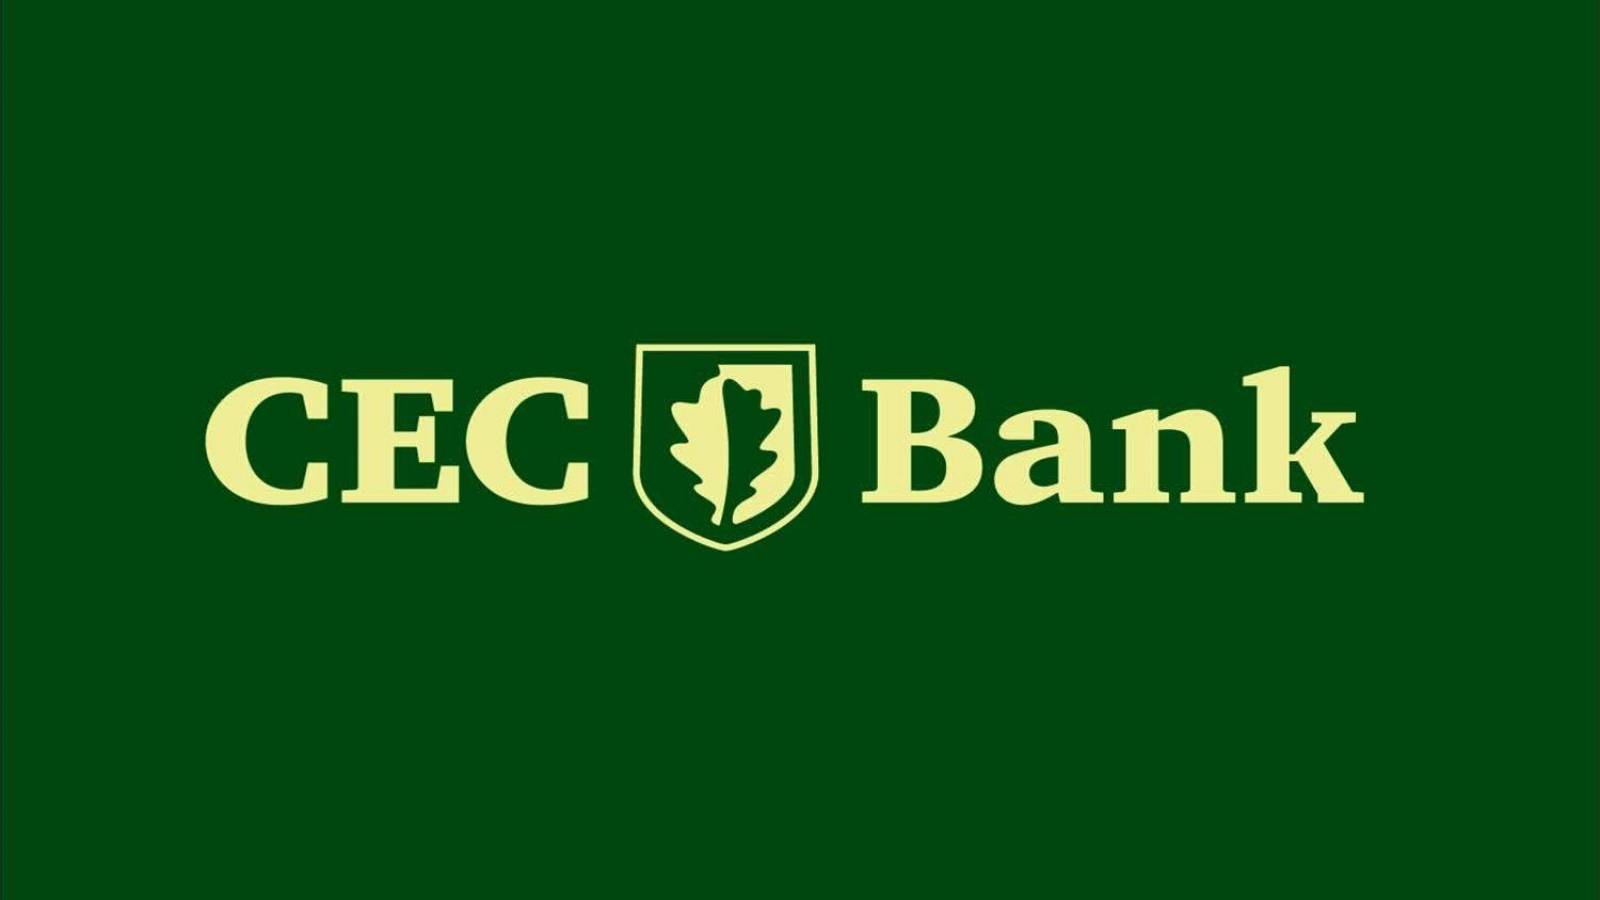 Die CEC Bank hat betrogen